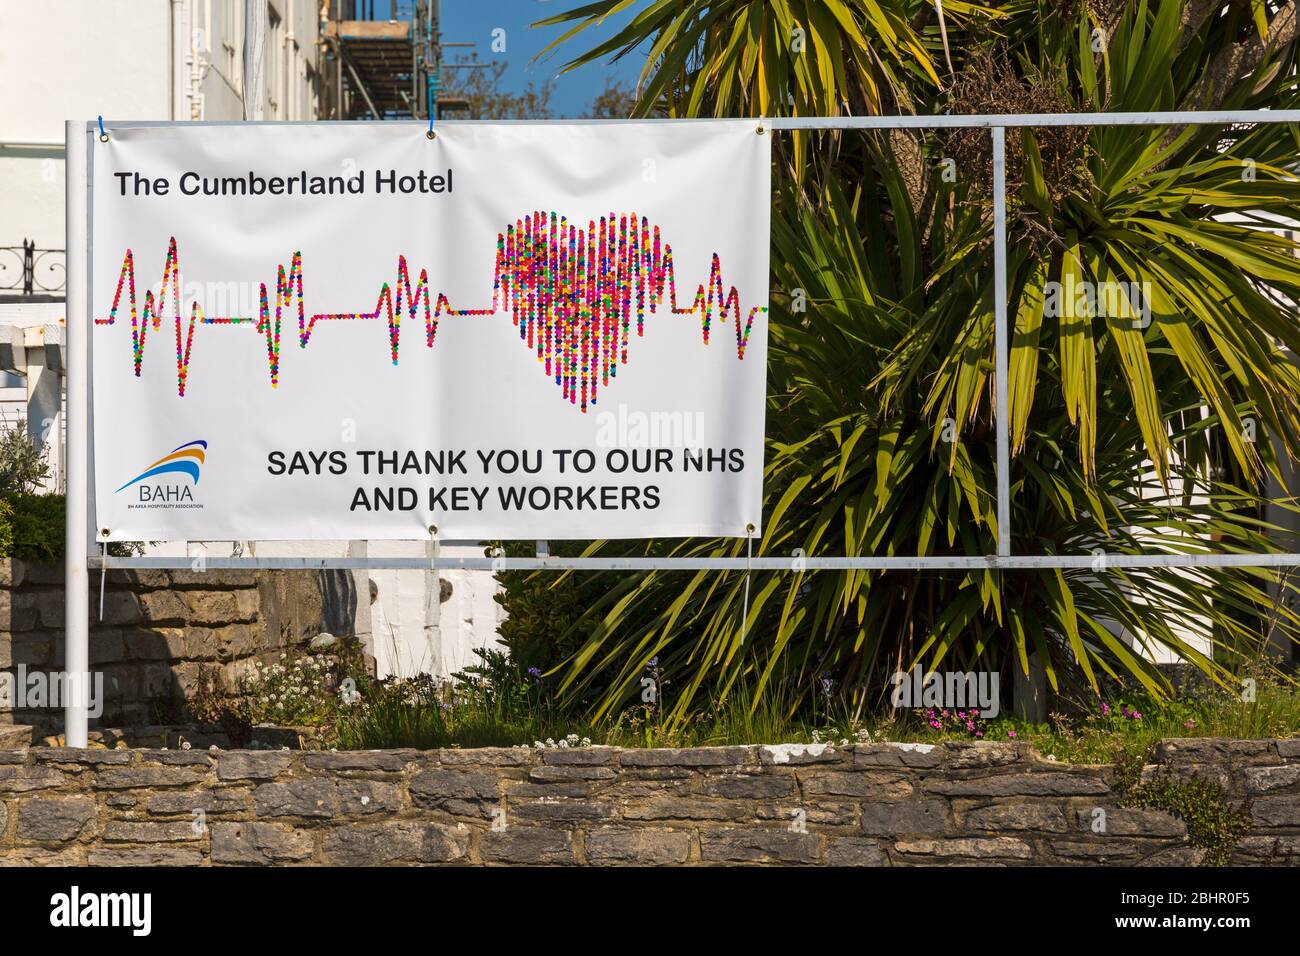 Il Cumberland Hotel vi ringrazia per il nostro NHS e banner dei principali lavoratori durante la pandemia di Coronavirus a Bournemouth, Dorset UK nell'aprile 2020 Foto Stock